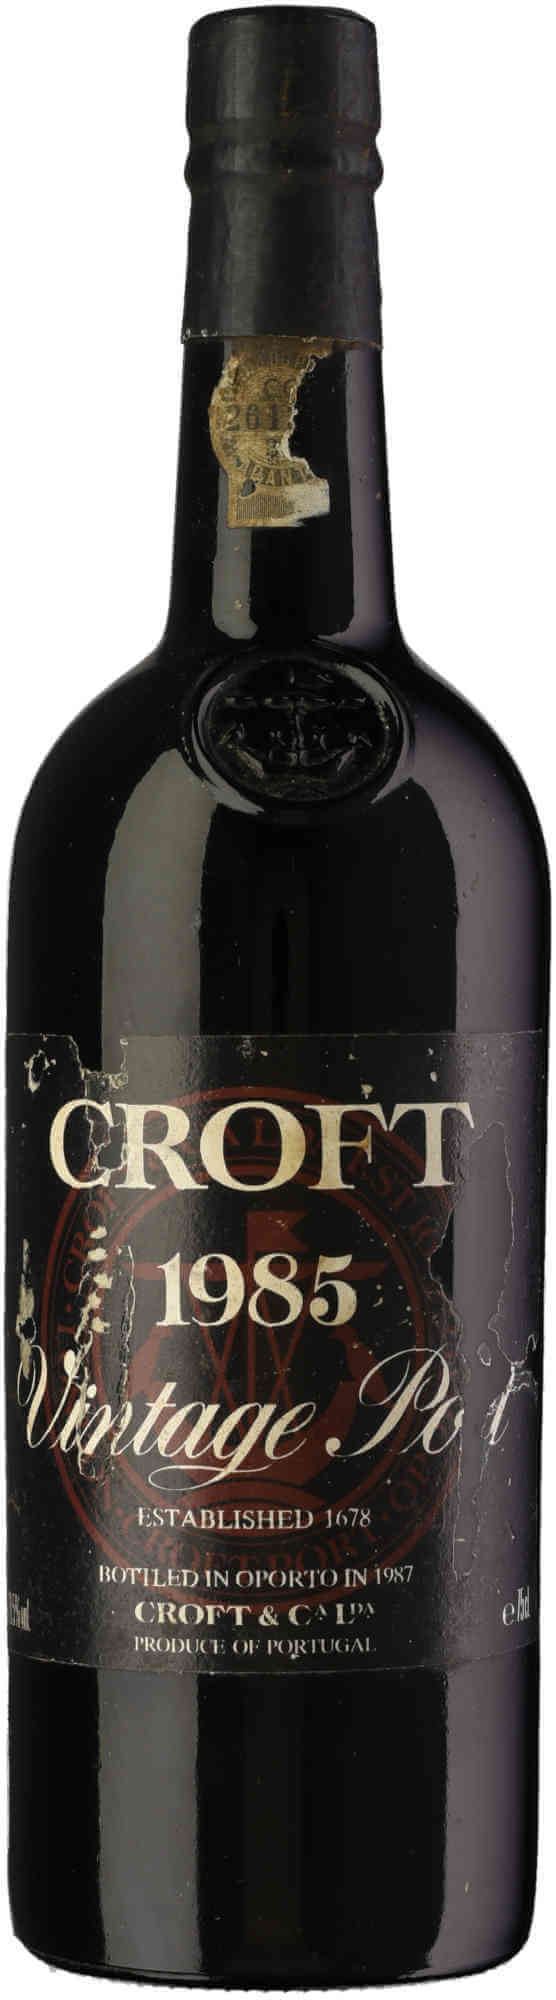 Croft-Vintage-Port-1985